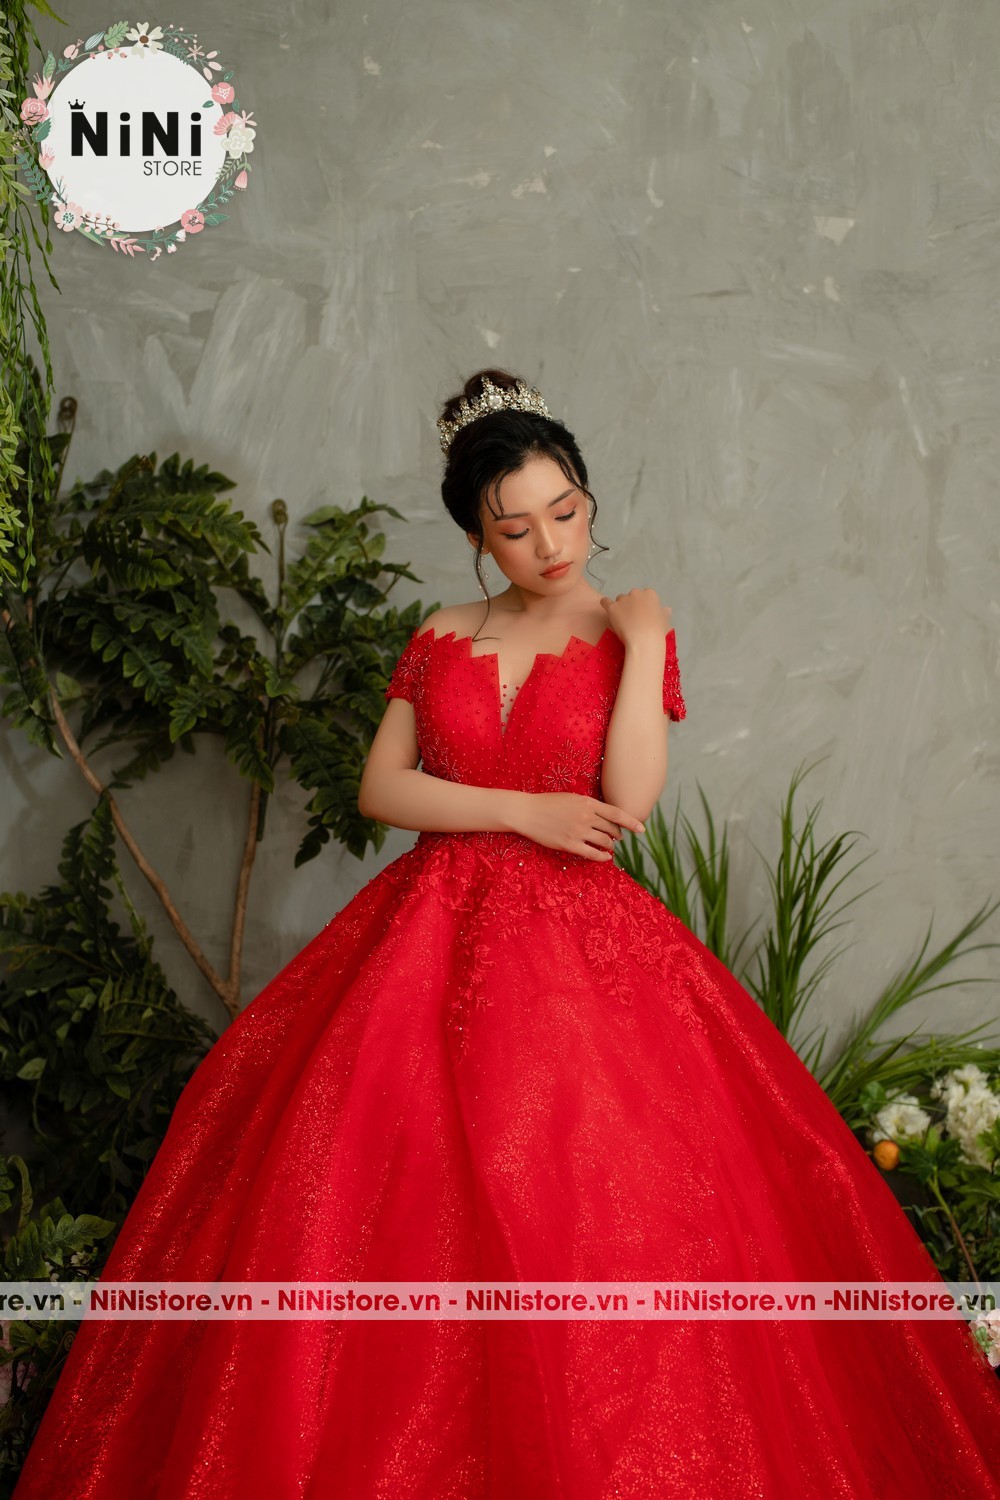 Có nên chọn váy cưới đỏ? - Mẫu váy cưới đẹp màu đỏ dưới 1 triệu Bống  Maxishop